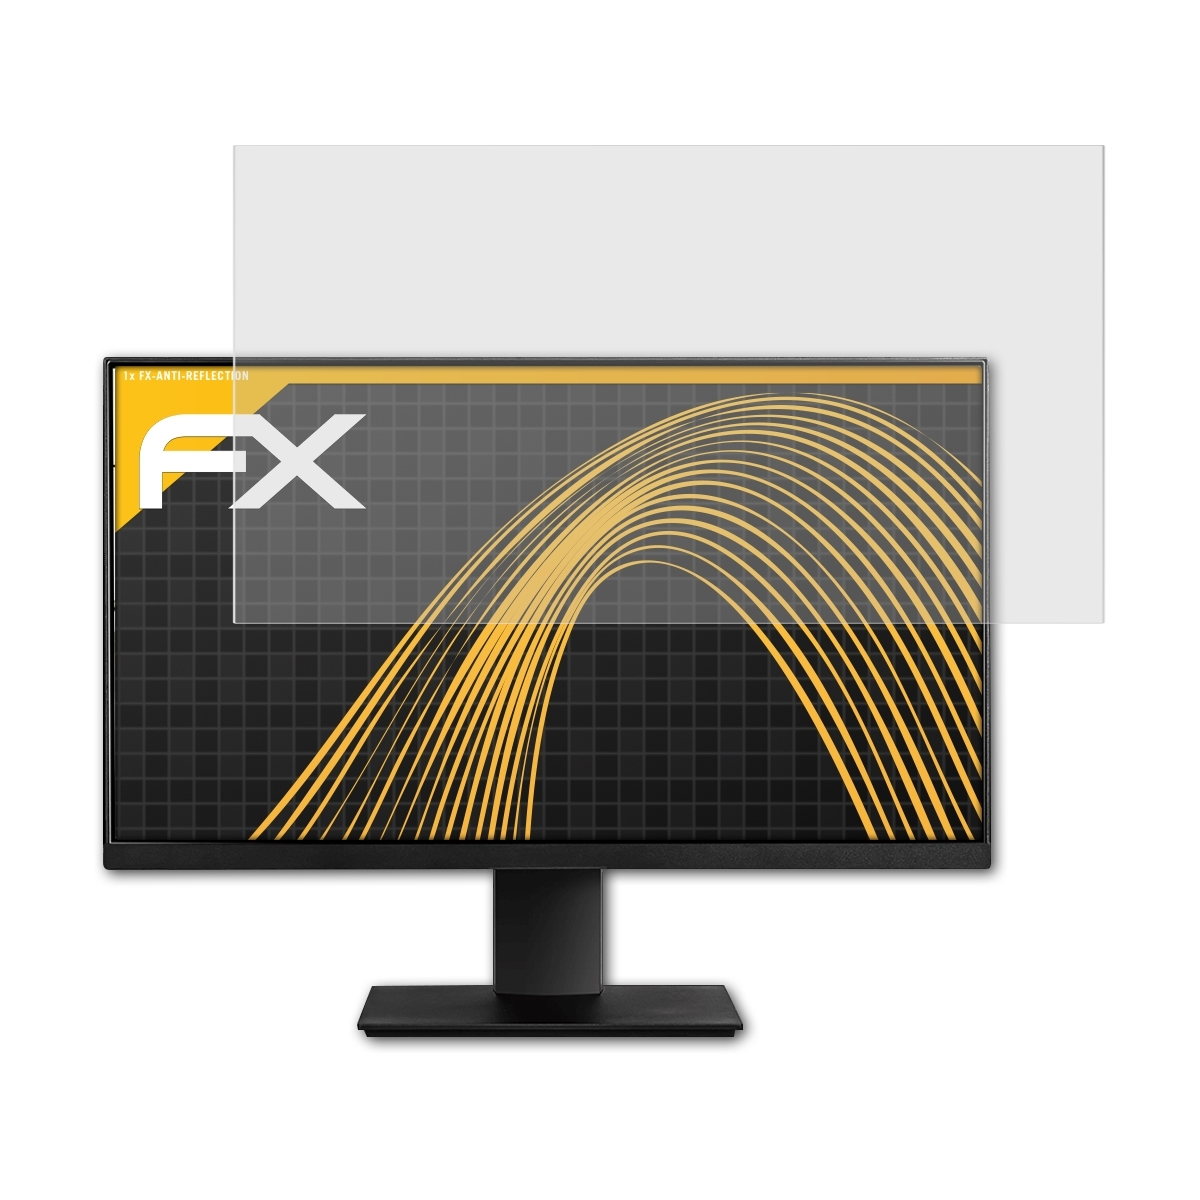 ATFOLIX FX-Antireflex Displayschutz(für MSI PRO MP241)